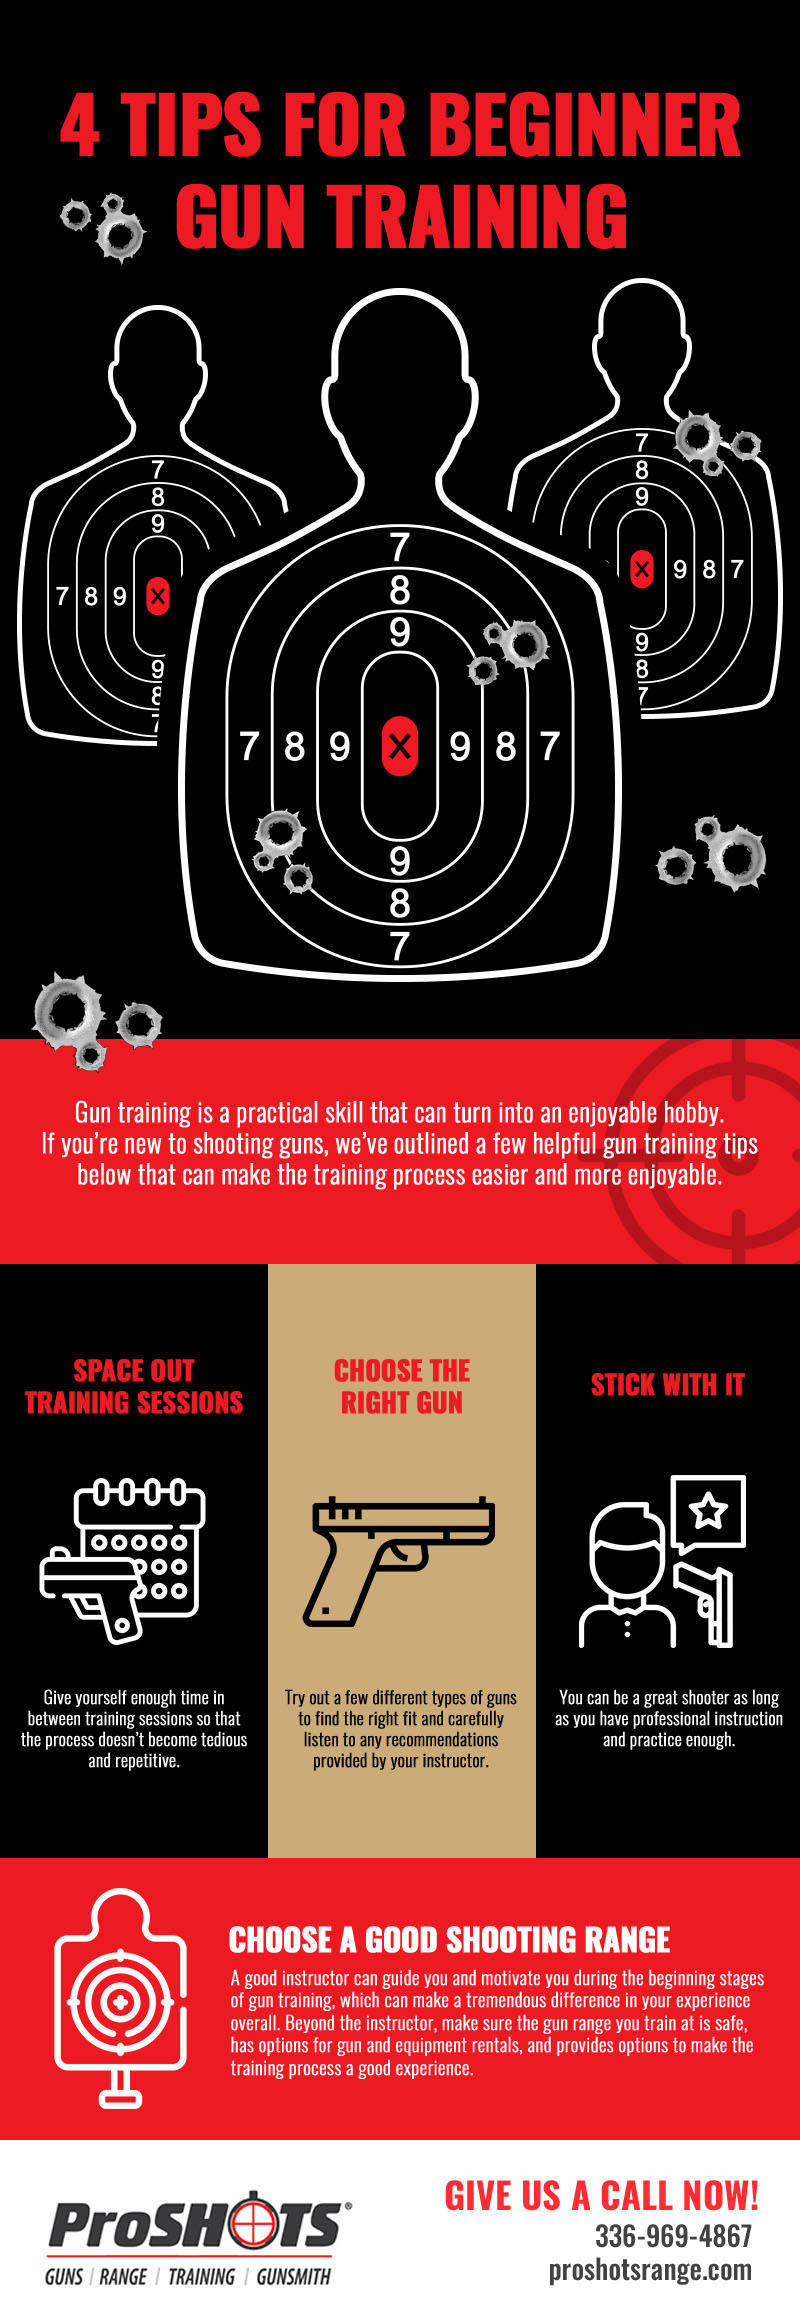 4 Tips for Beginner Gun Training